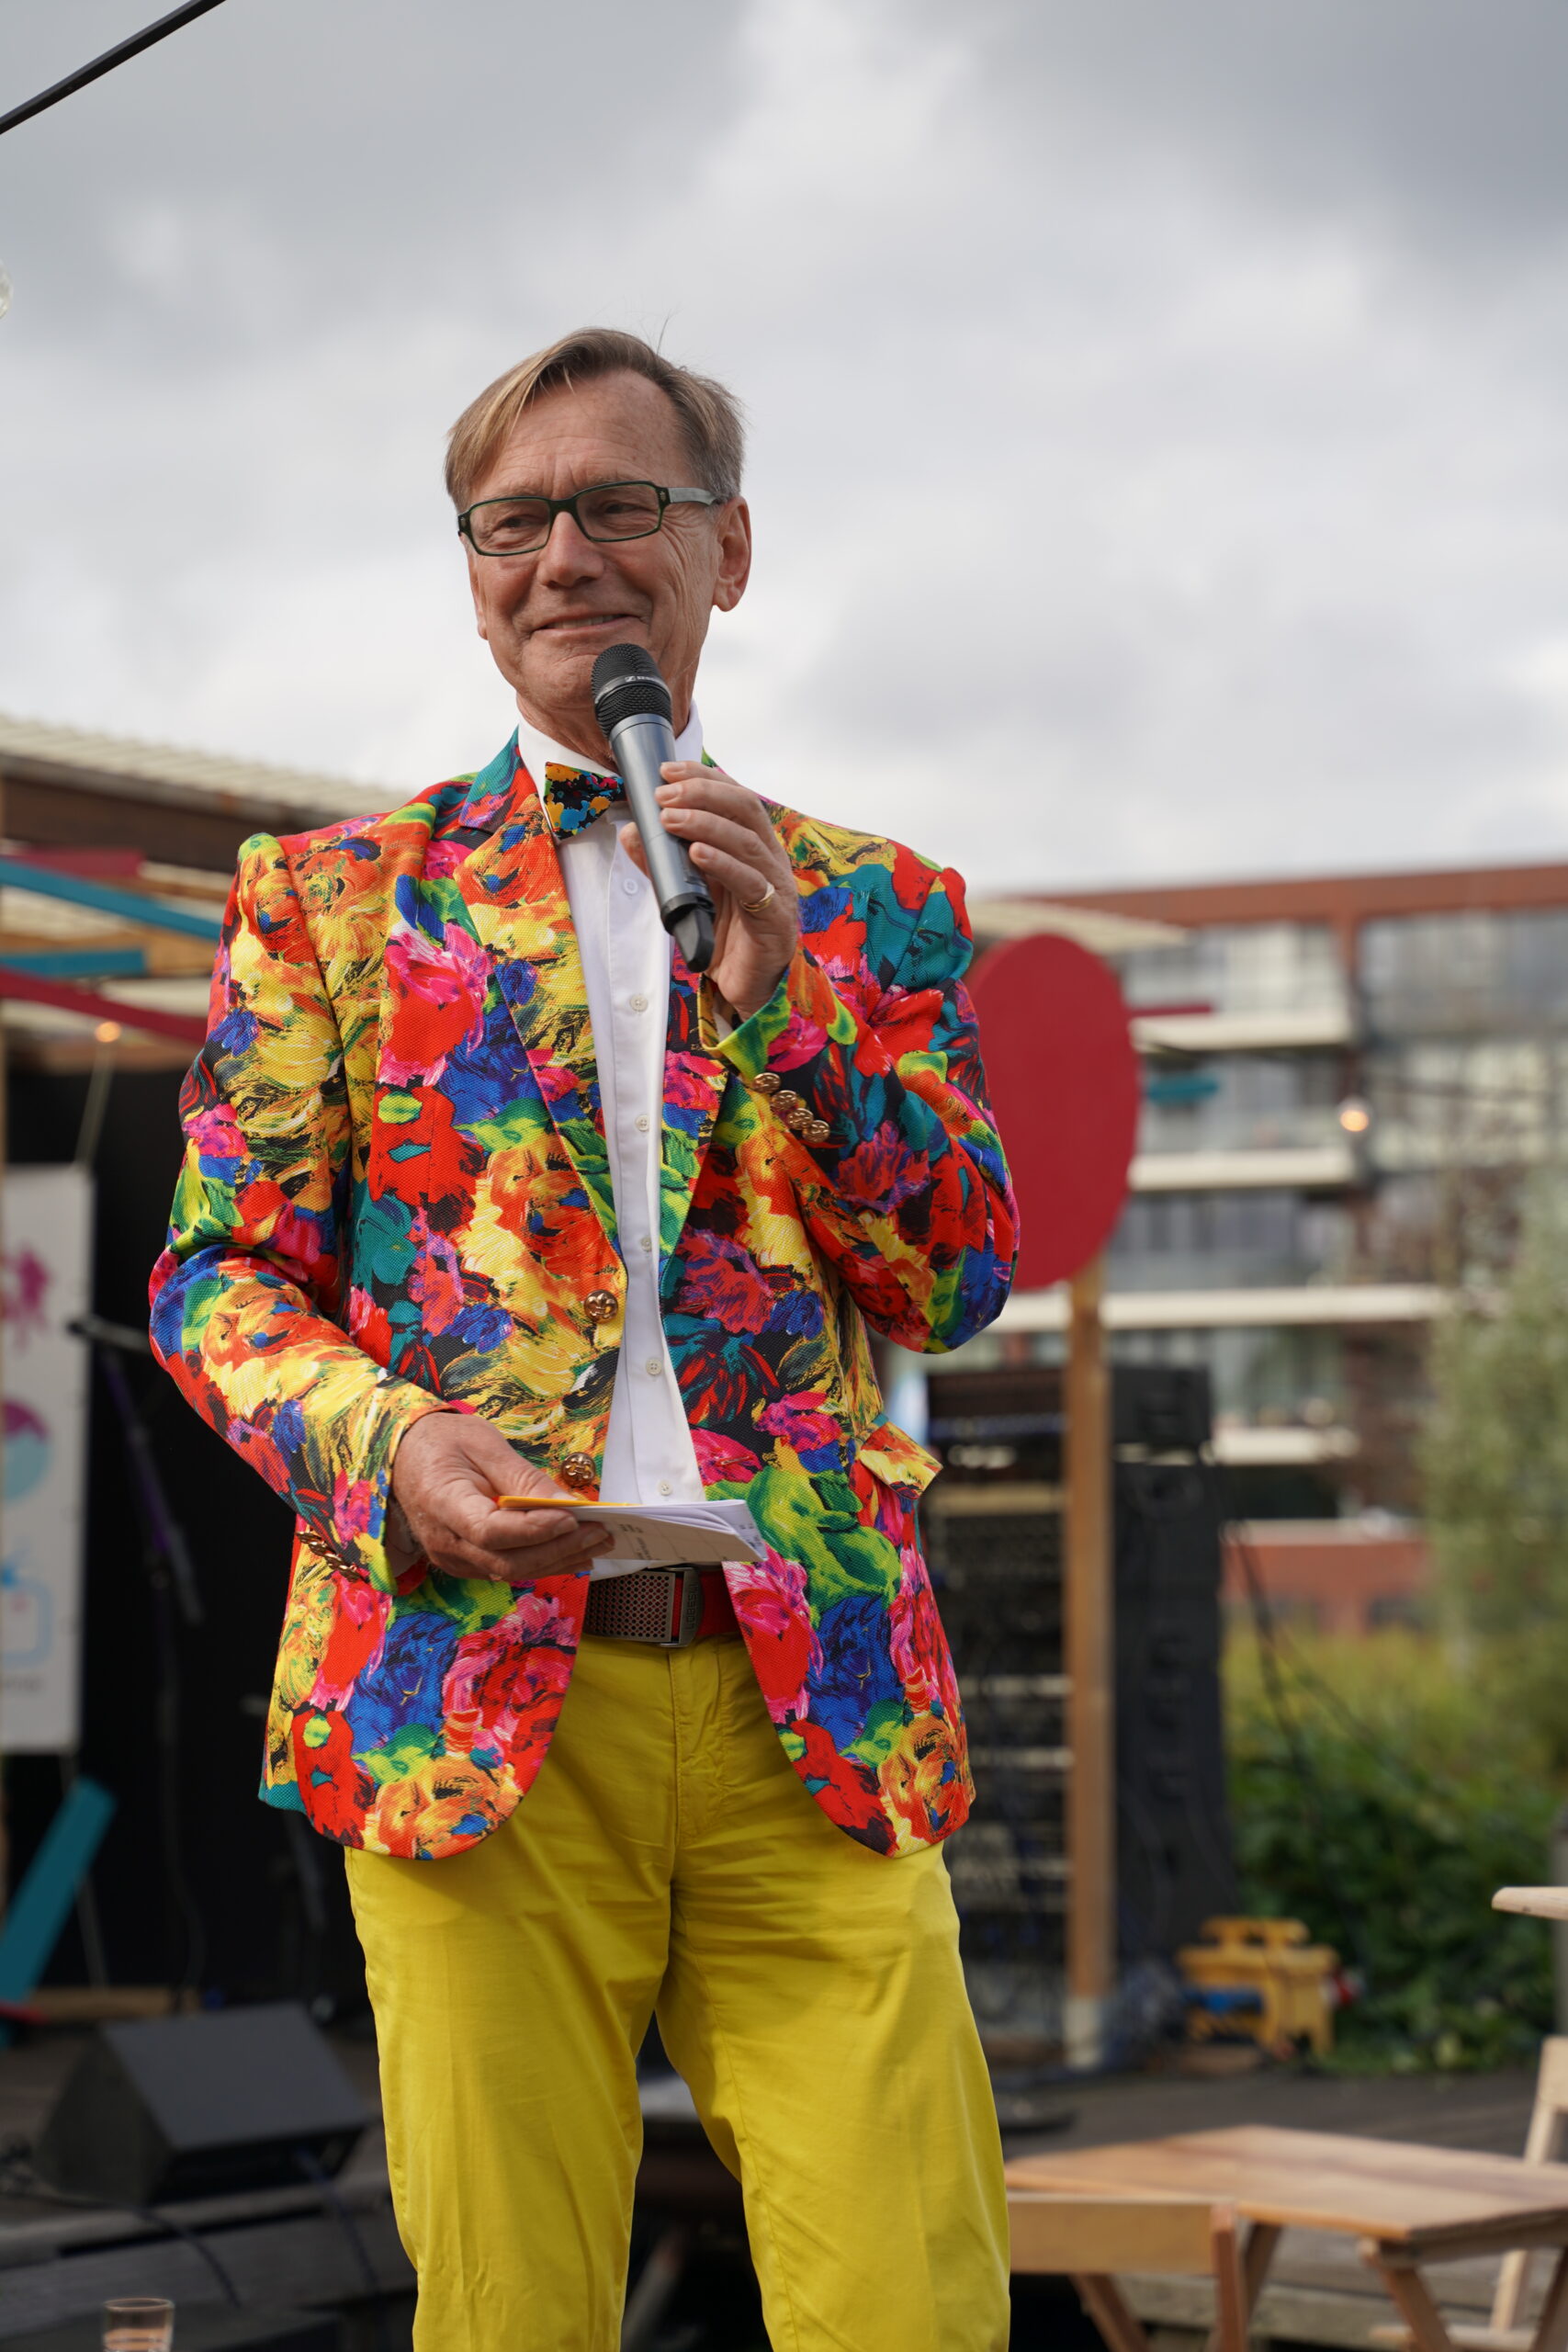 Maarten presenter & master-of-ceremony (MC)